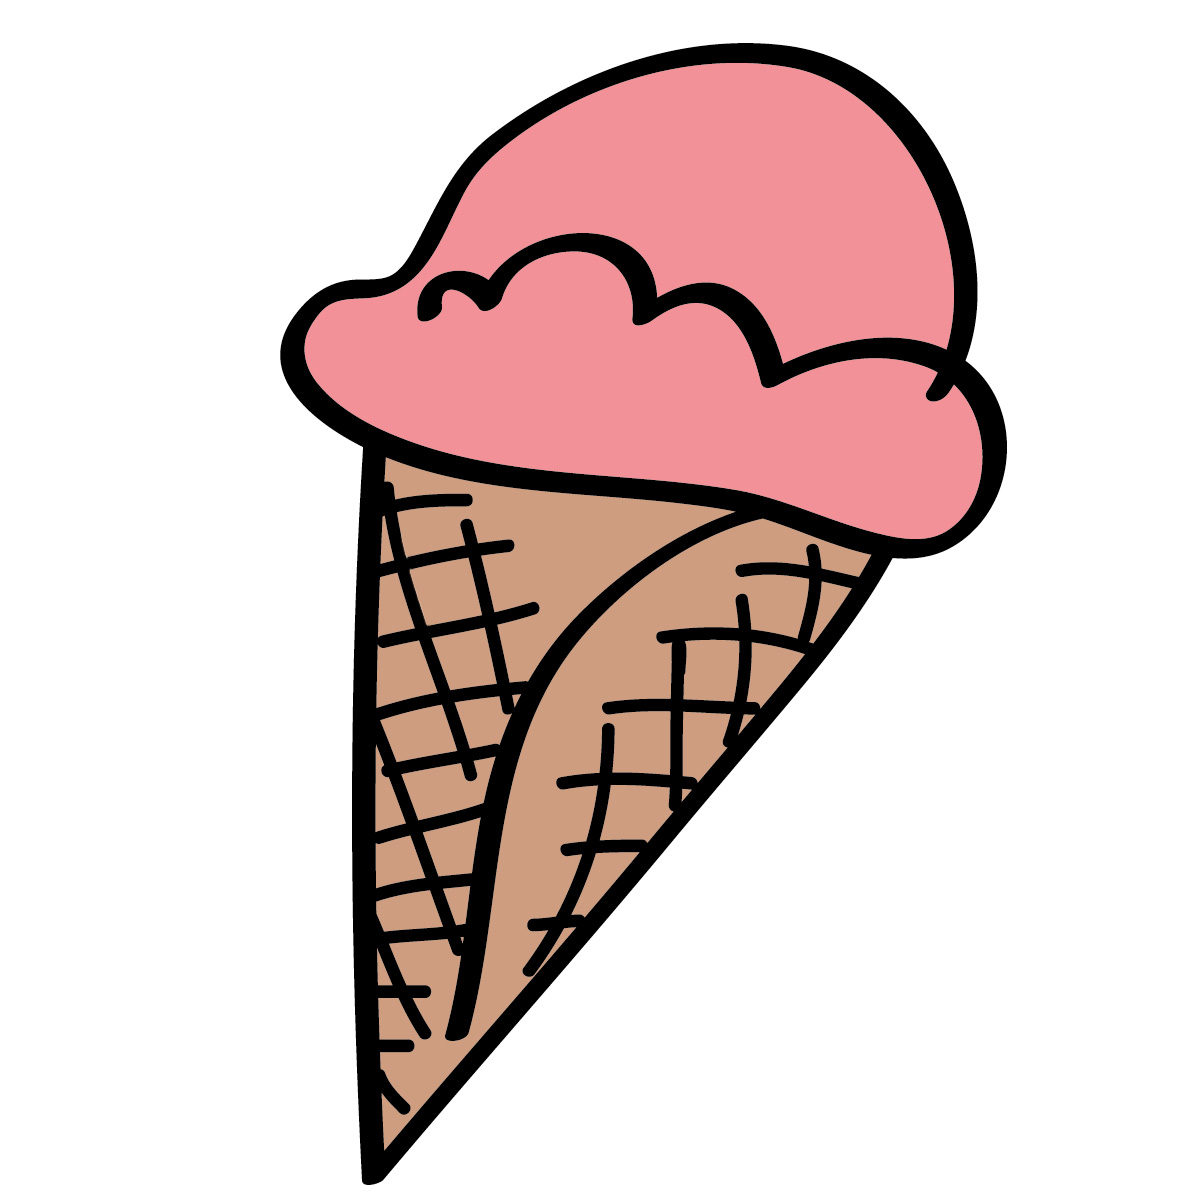 vanilla ice cream cone clipart - photo #27